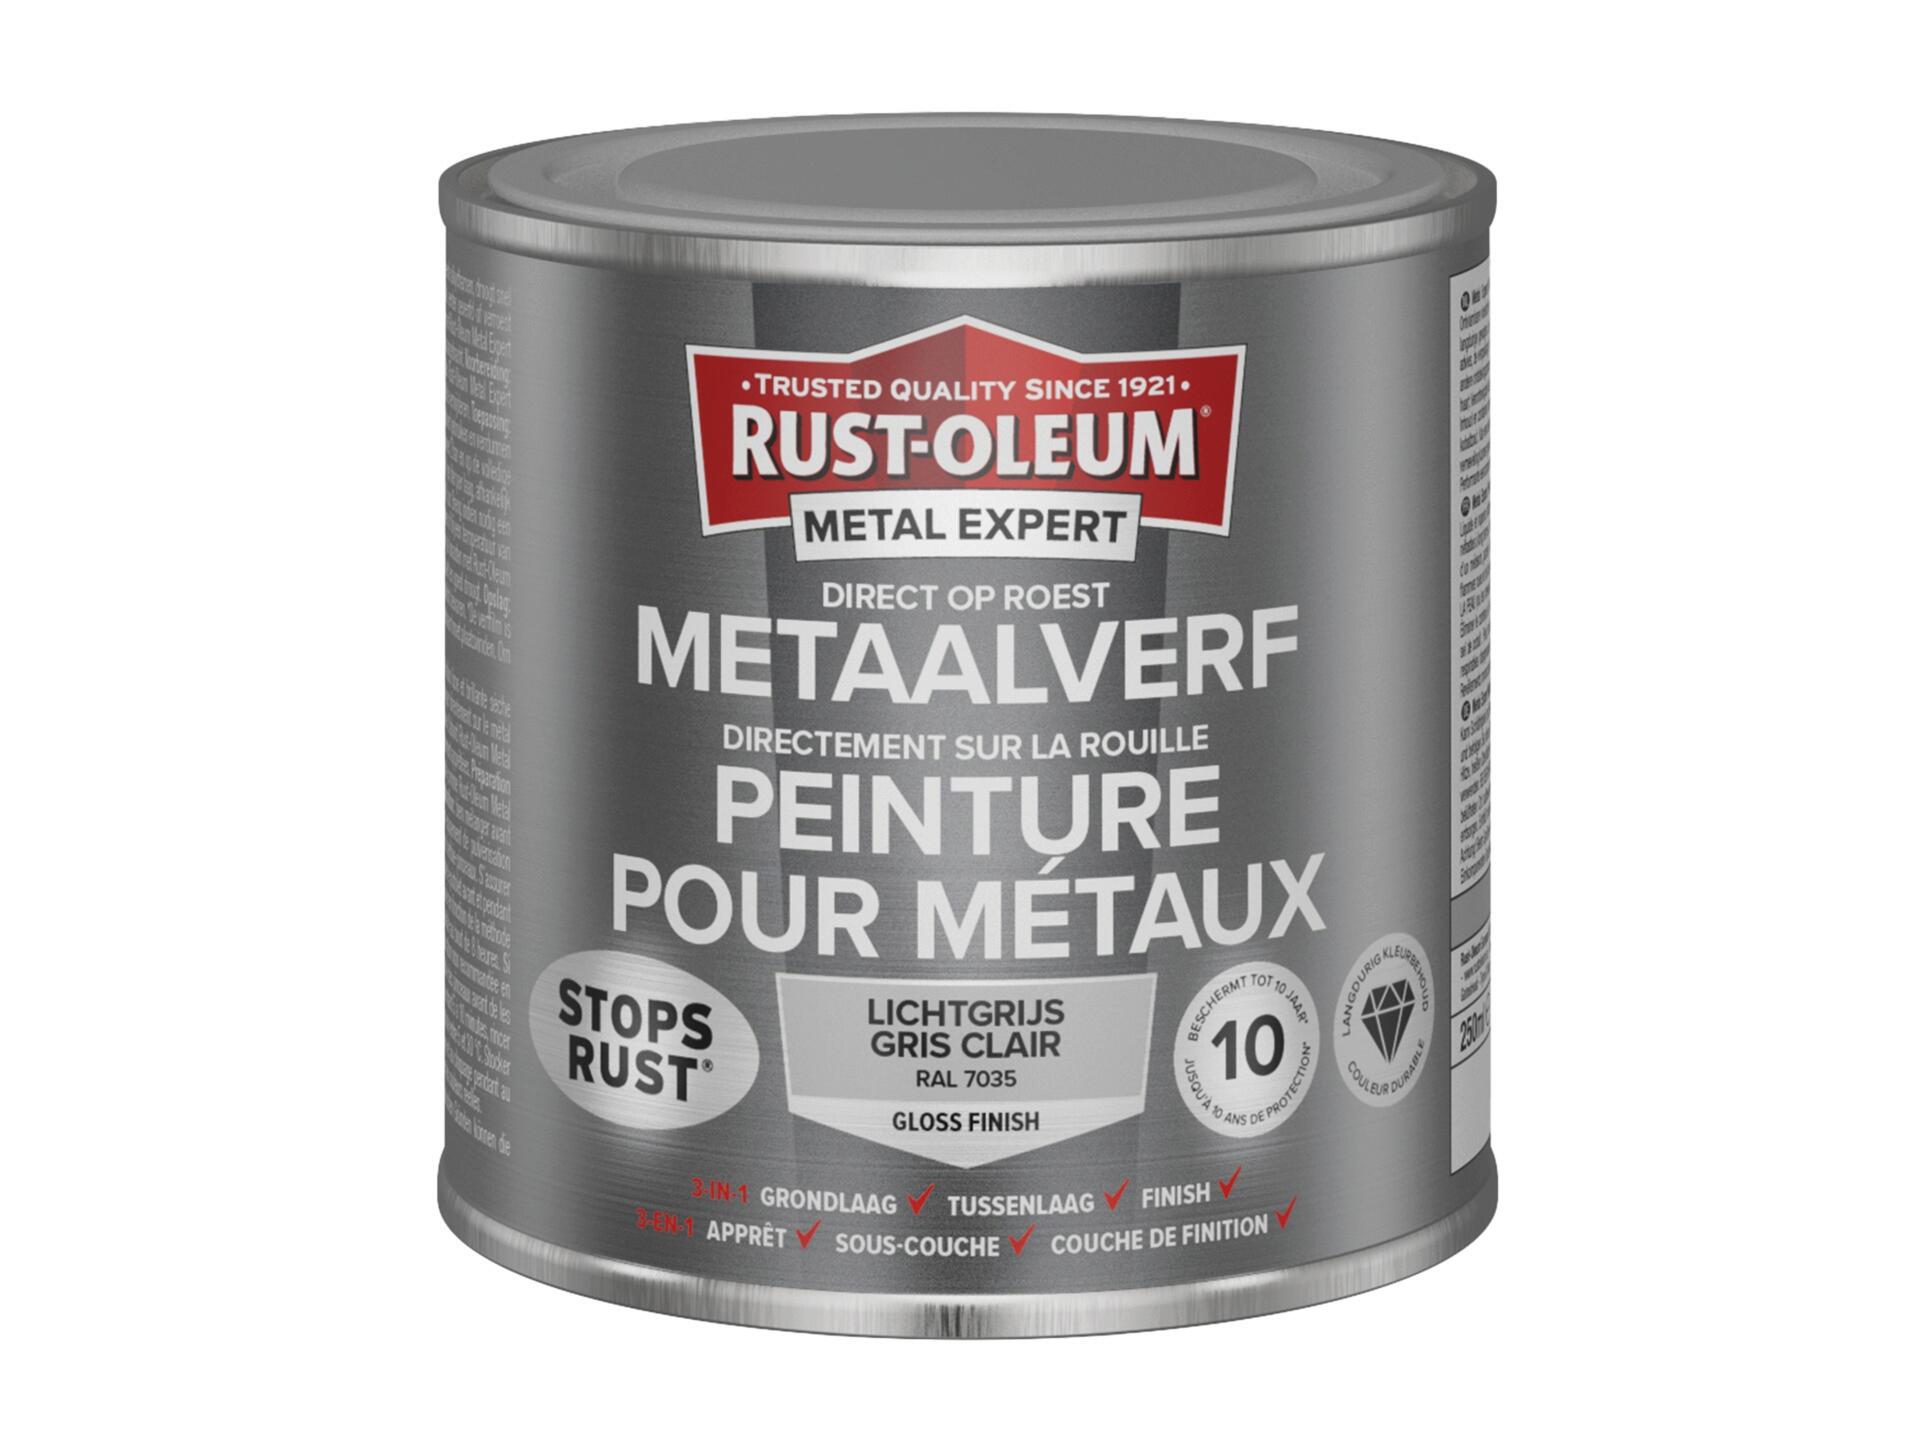 Rust-oleum Metal Expert peinture pour métaux brillant 250ml gris clair